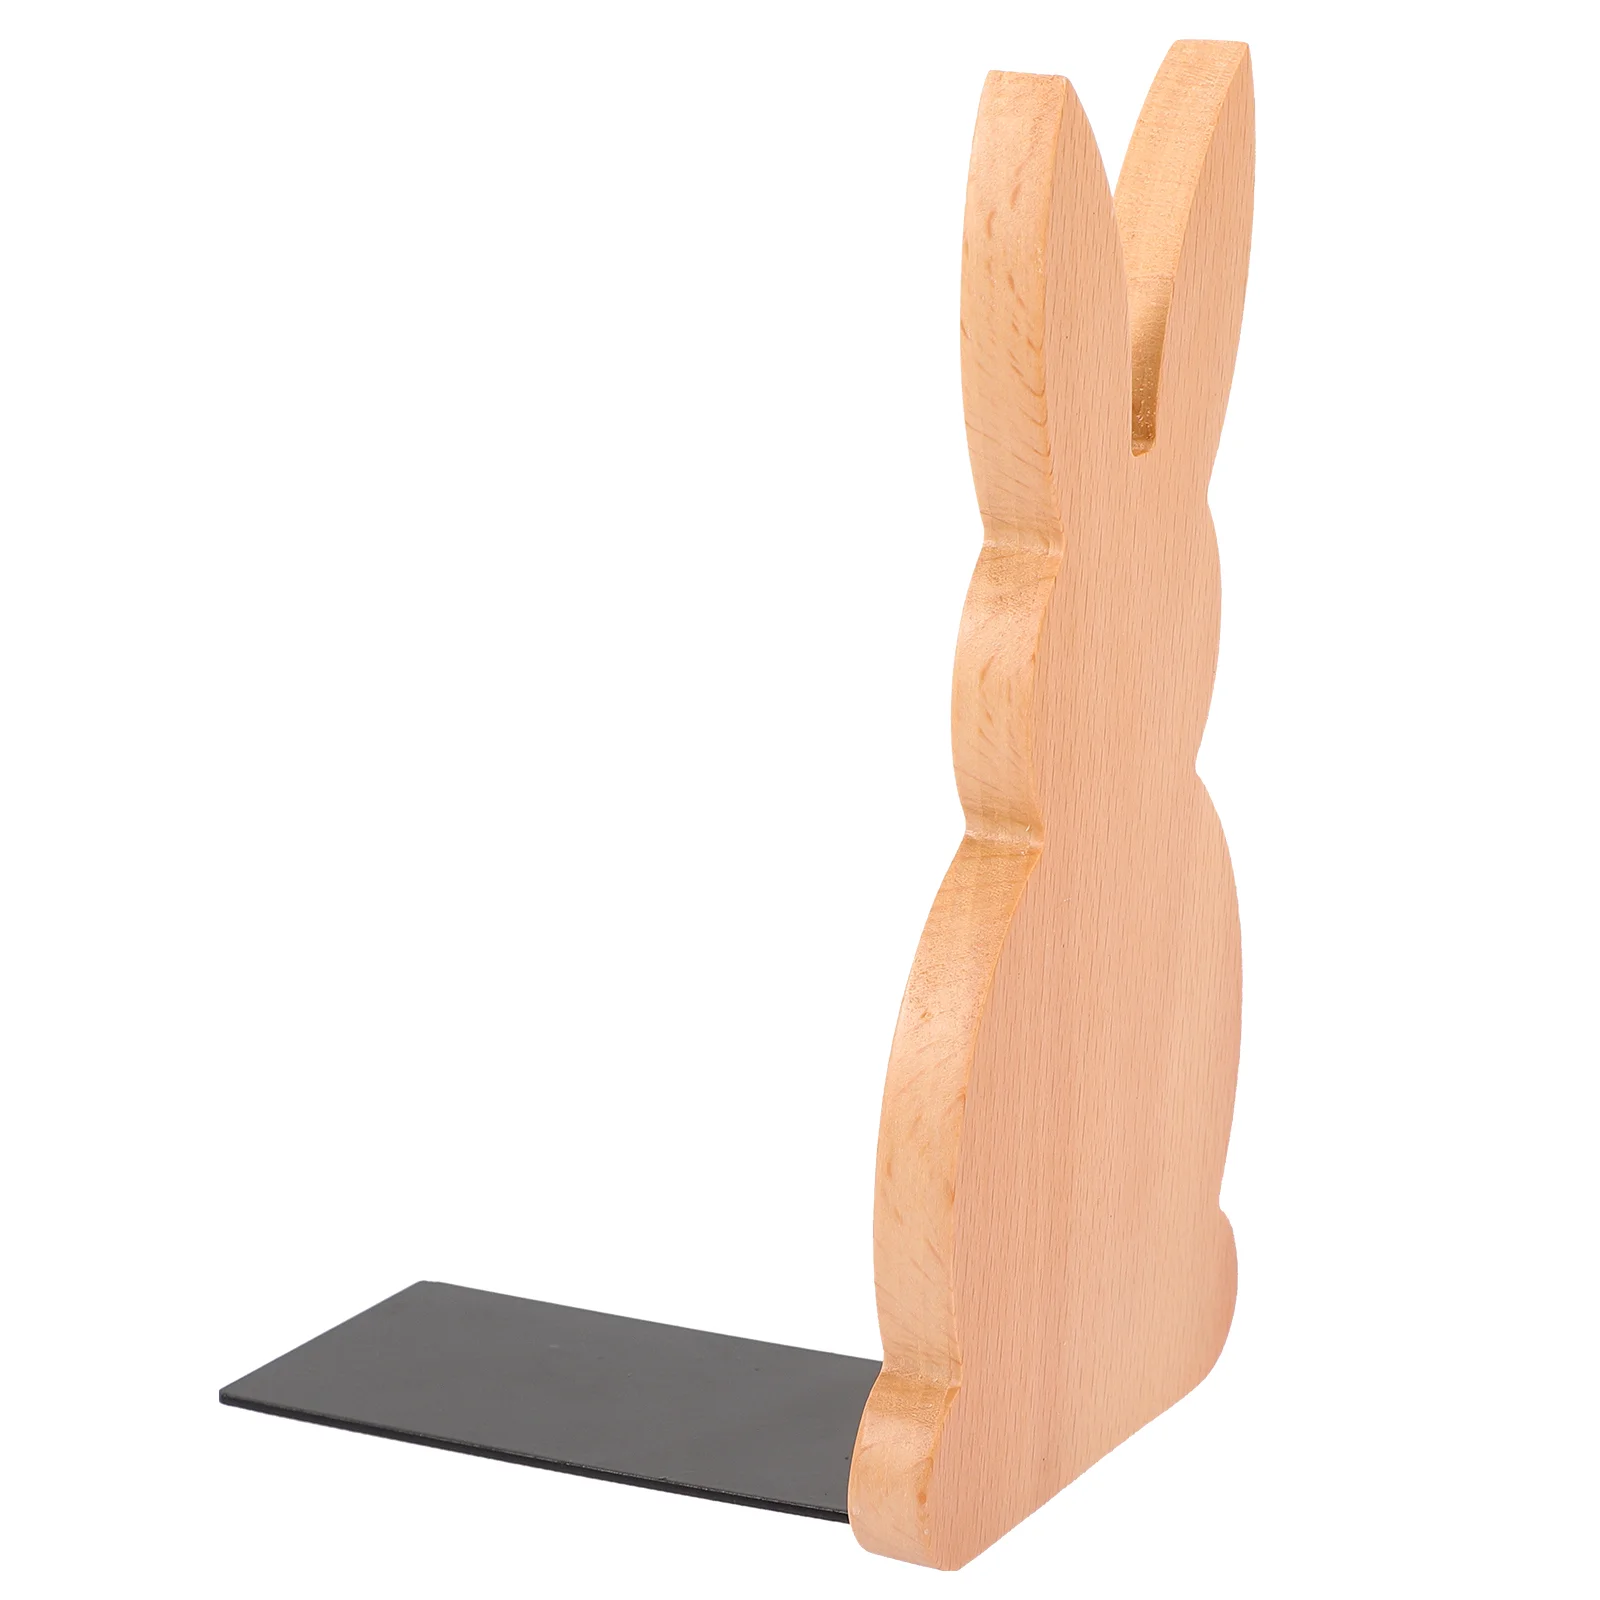 

Book Bookends File Ends Stand Rack Holder Desktop Wood Decorative Storage Easter Organizer Bunny Shelves Heavy Divider Decor